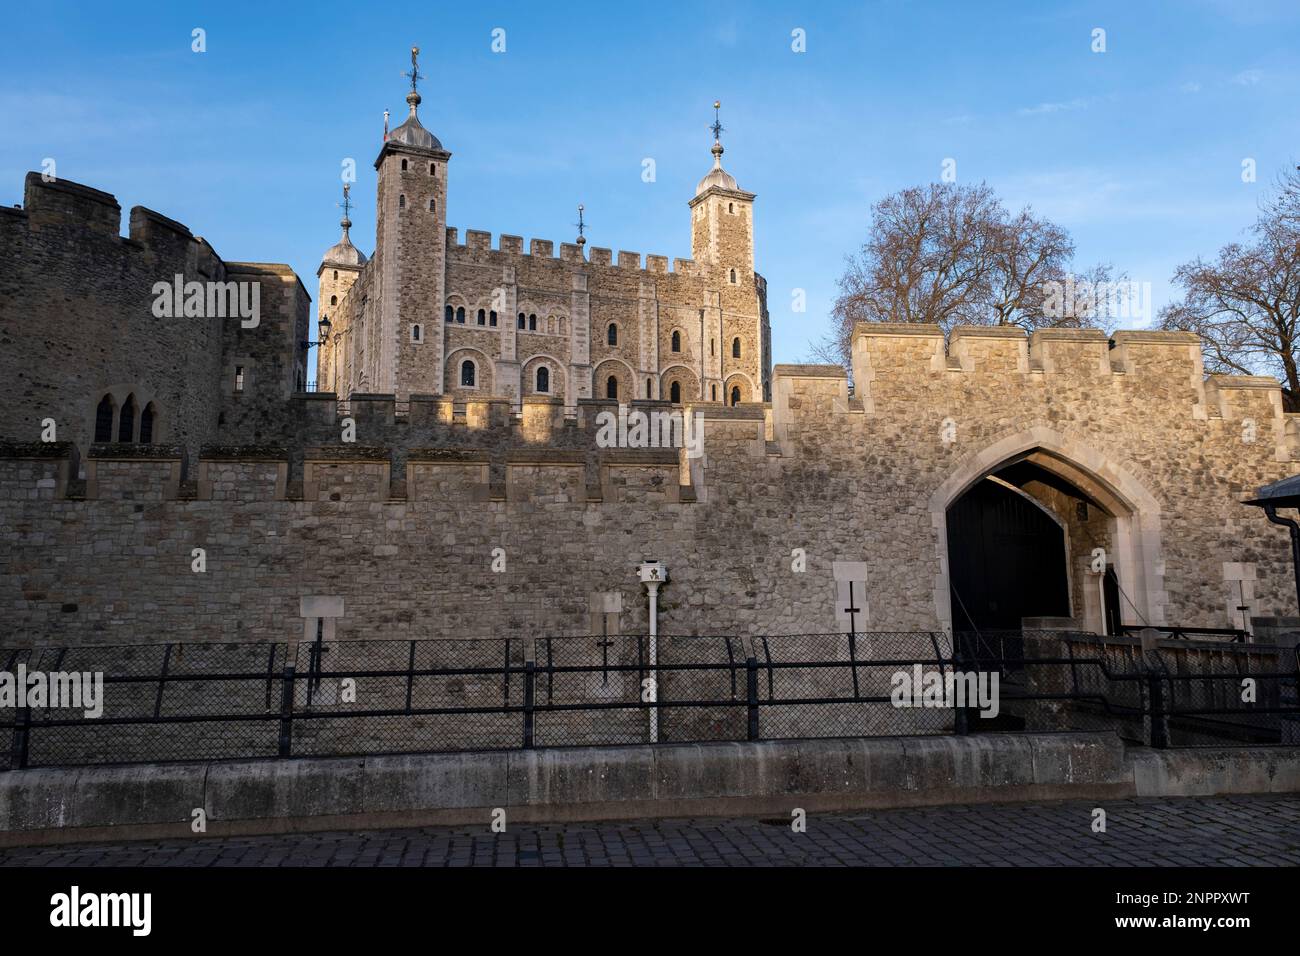 Tower of London am 5. Februar 2023 in London, Großbritannien. Der Tower of London, offiziell sein königlicher Palast und die Festung des Tower of London, ist ein historisches Schloss, das Ende 1066 im Rahmen der normannischen Eroberung von England gegründet wurde. Stockfoto